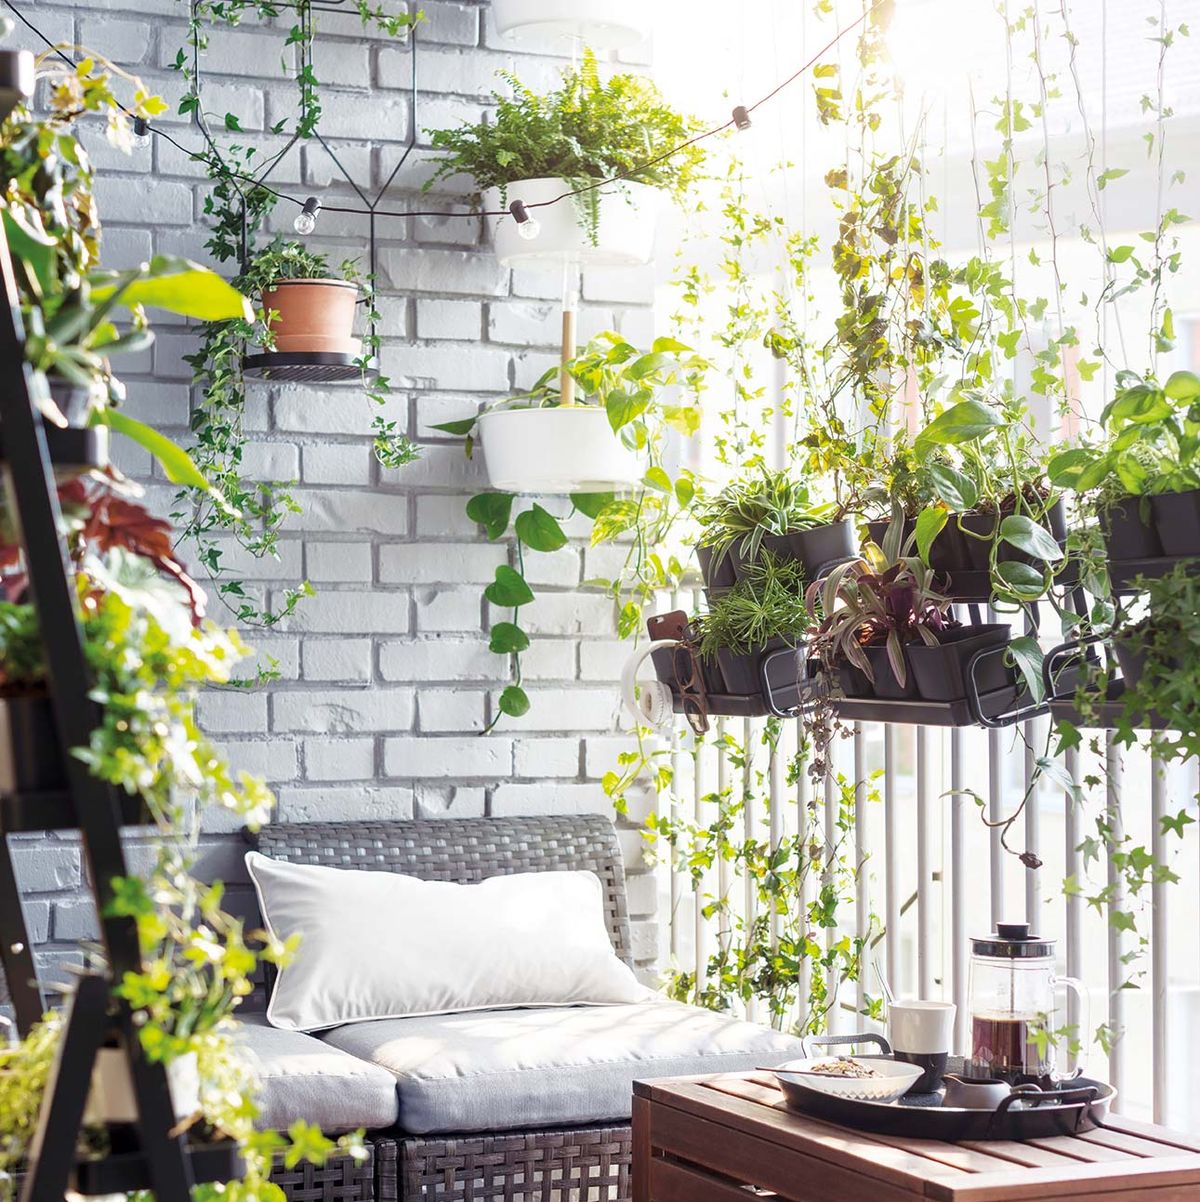 Bancos de jardín: consejos para elegir el tuyo - IKEA